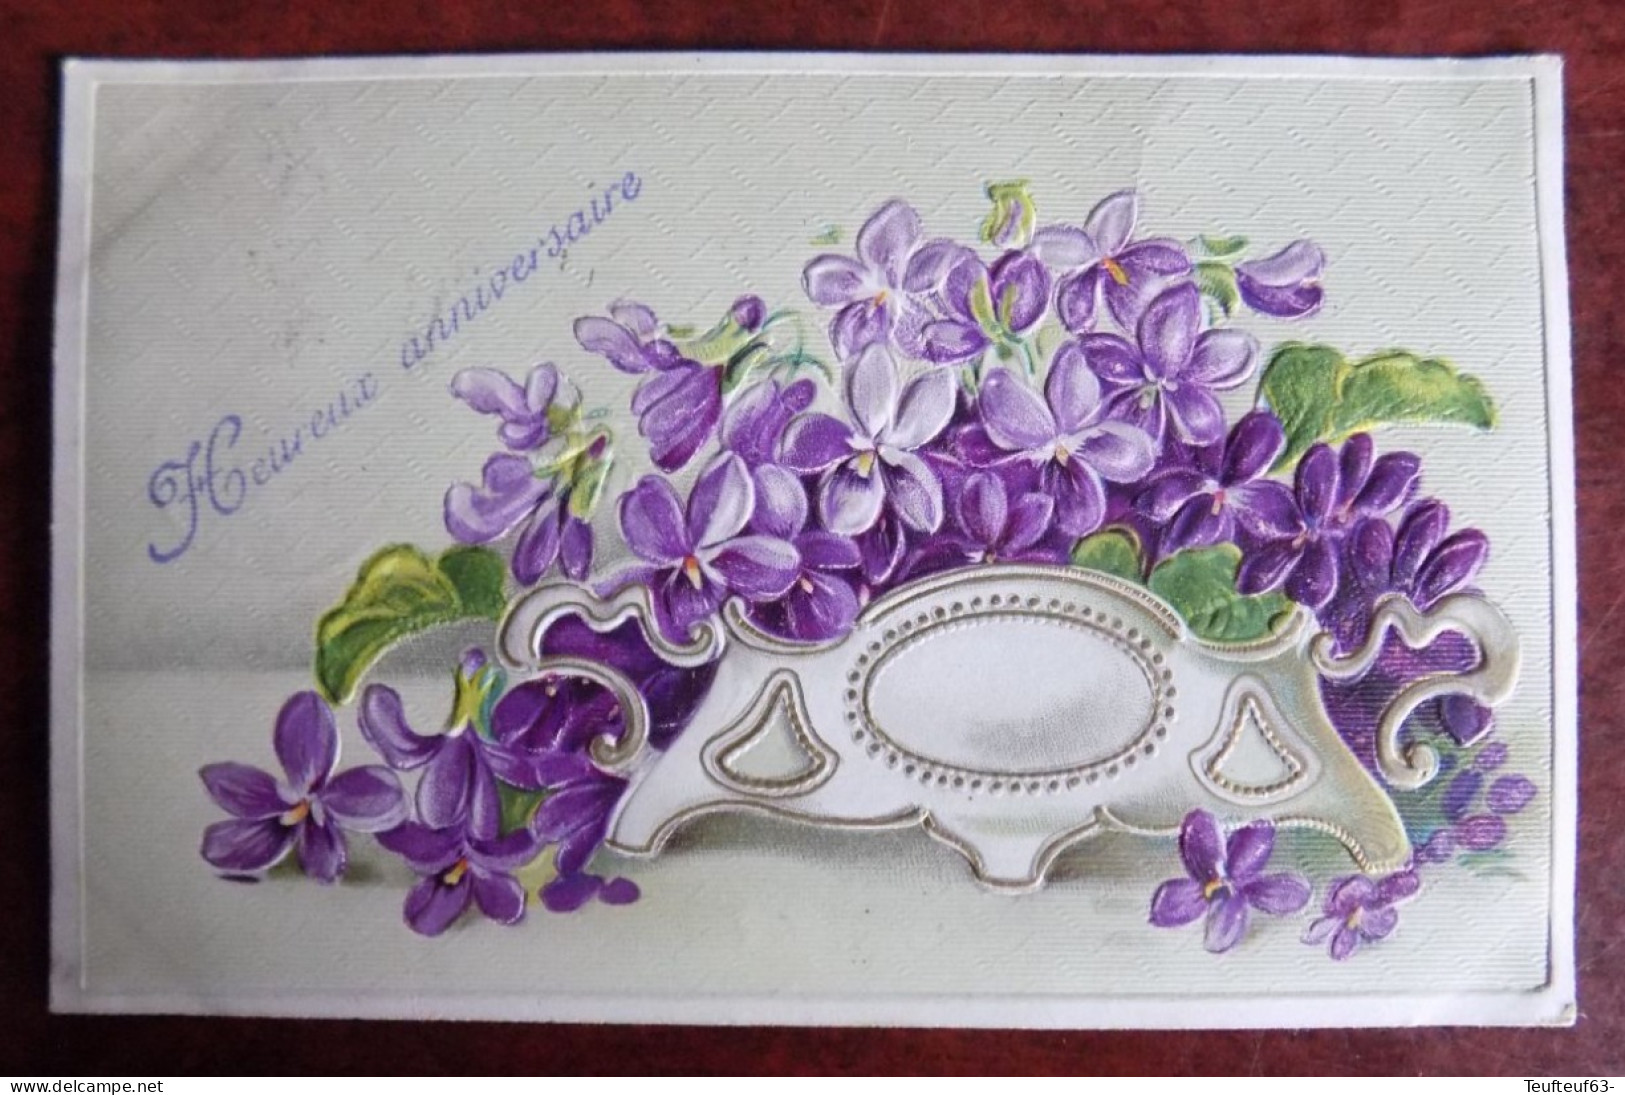 Cpa Fantaisie Heureux Anniversaire Jardinière Avec Fleurs Relief Gaufré - Melle Van Parys Rotselaer 1909 - Anniversaire